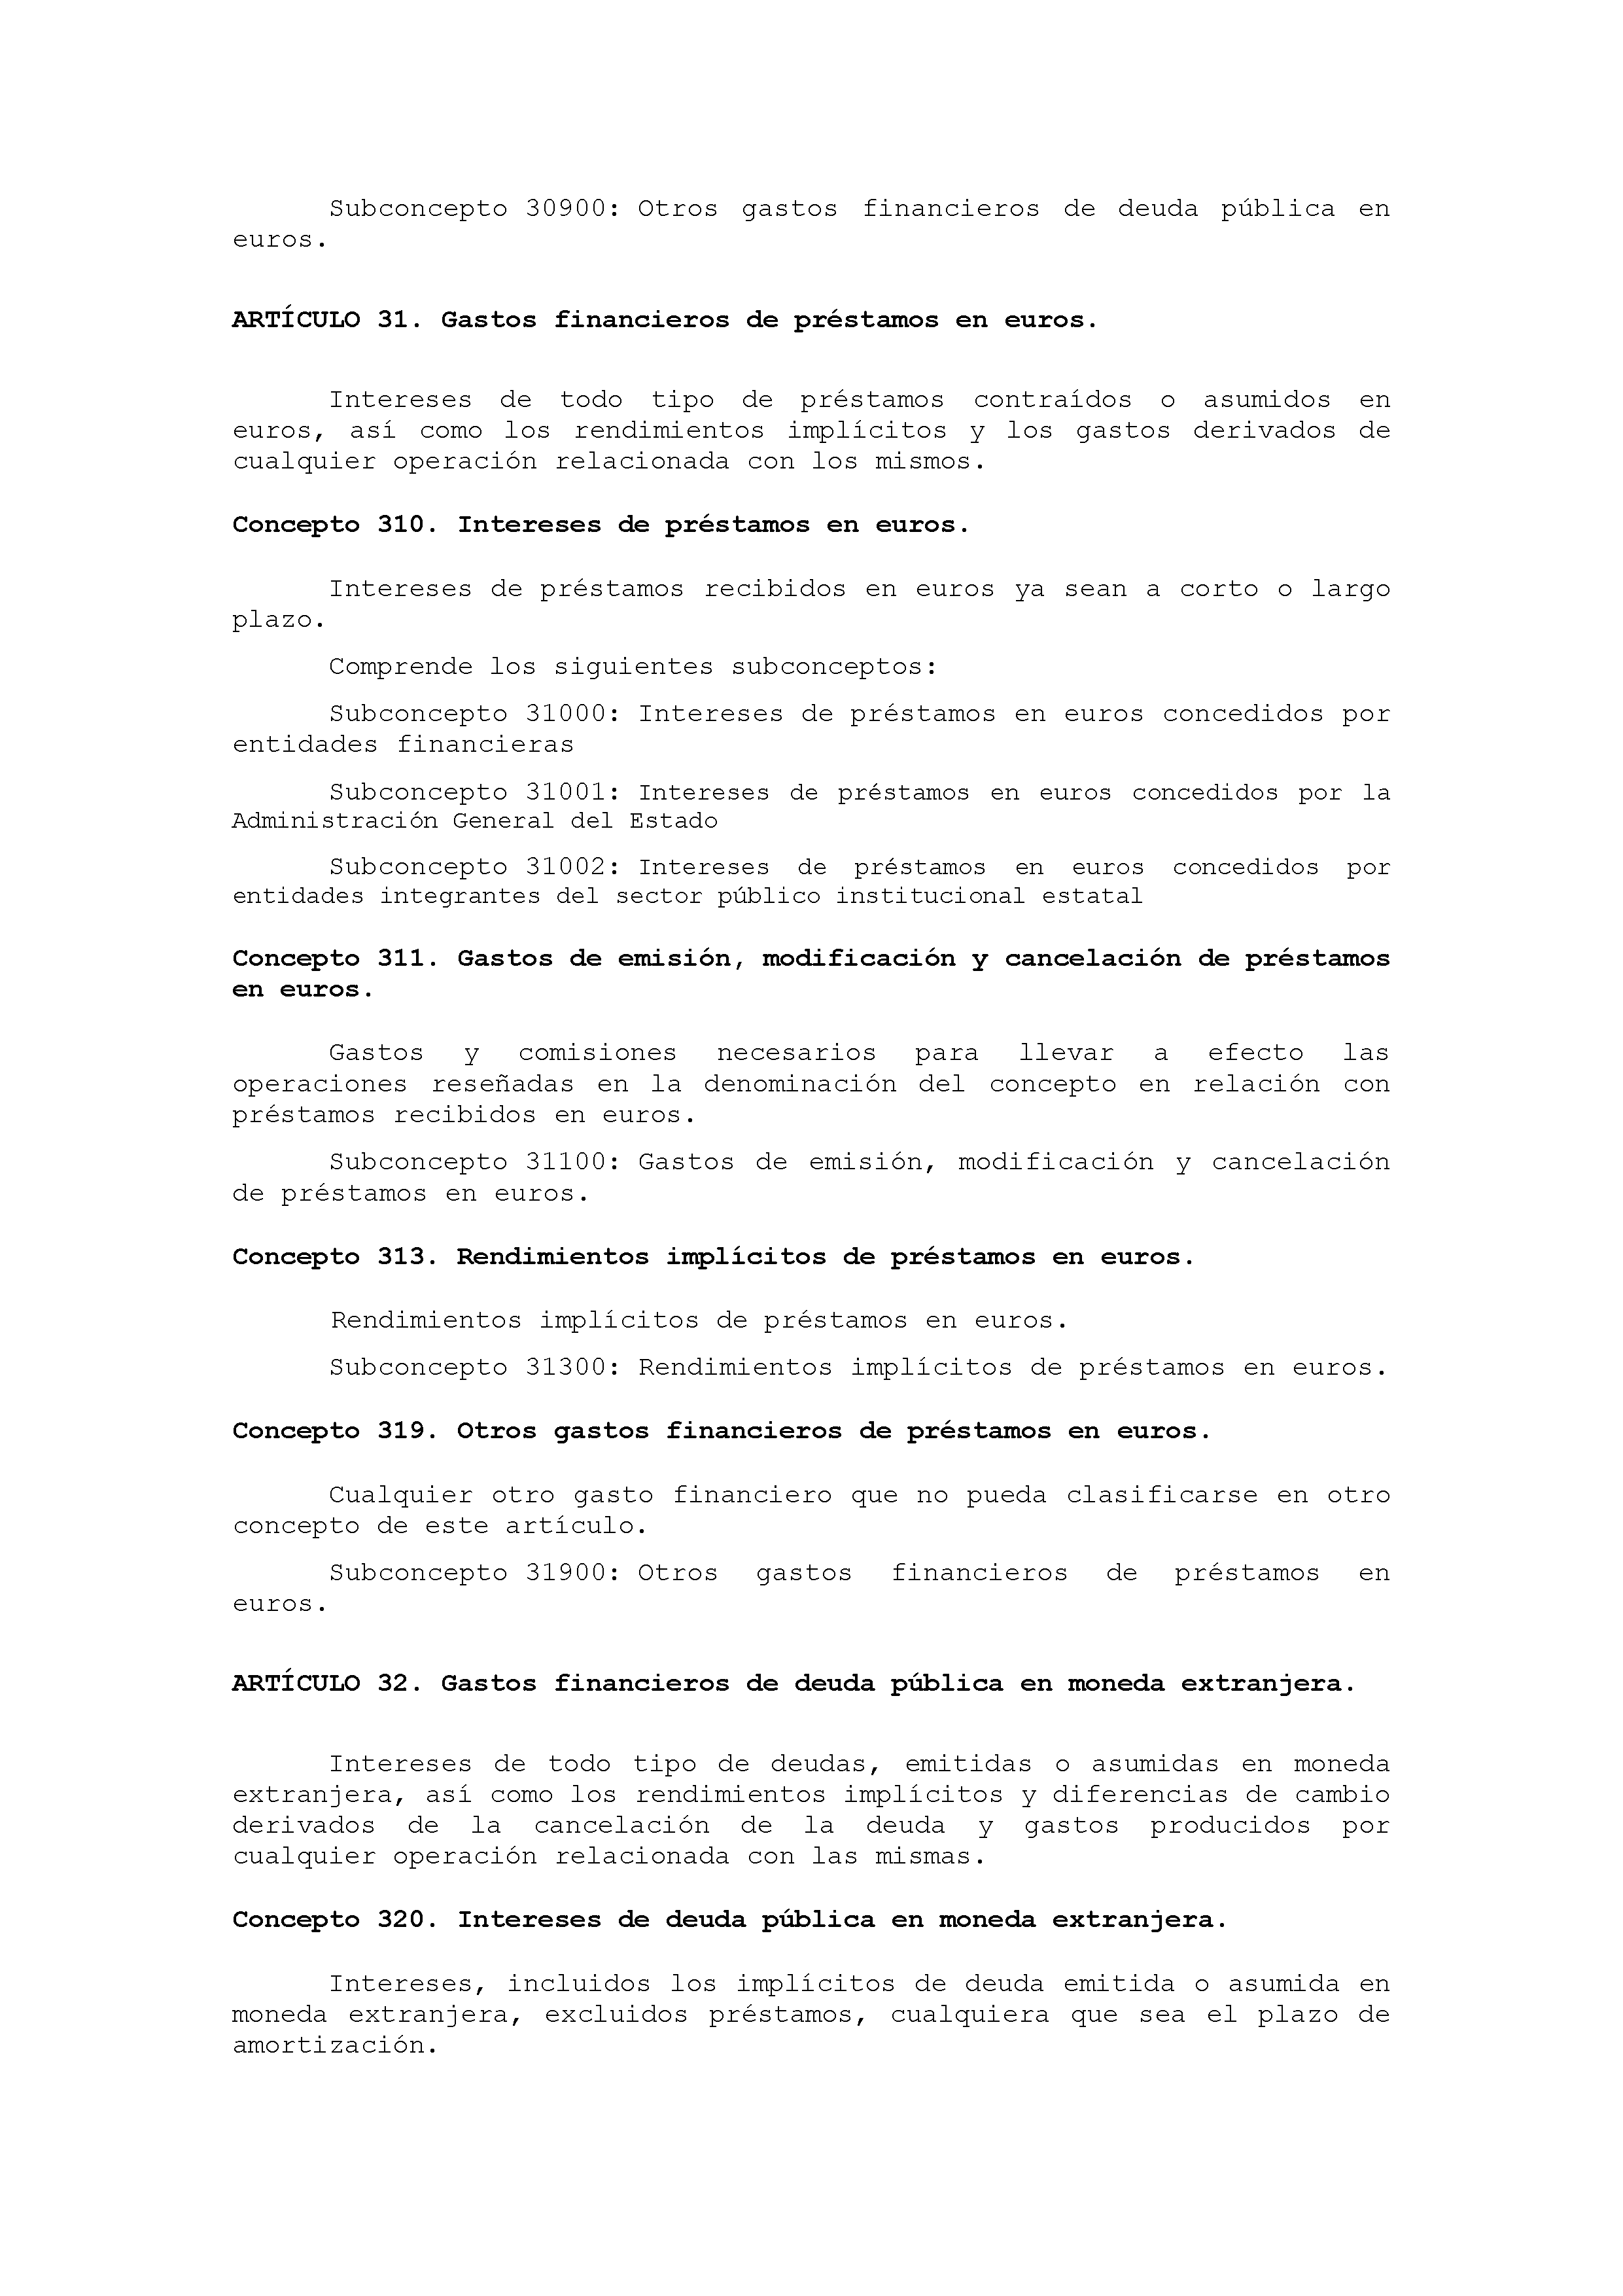 ANEXO IX CÓDIGO DE LA CLASIFICACIÓN ECONÓMICA DE LOS GASTOS PÚBLICOS Pag 28